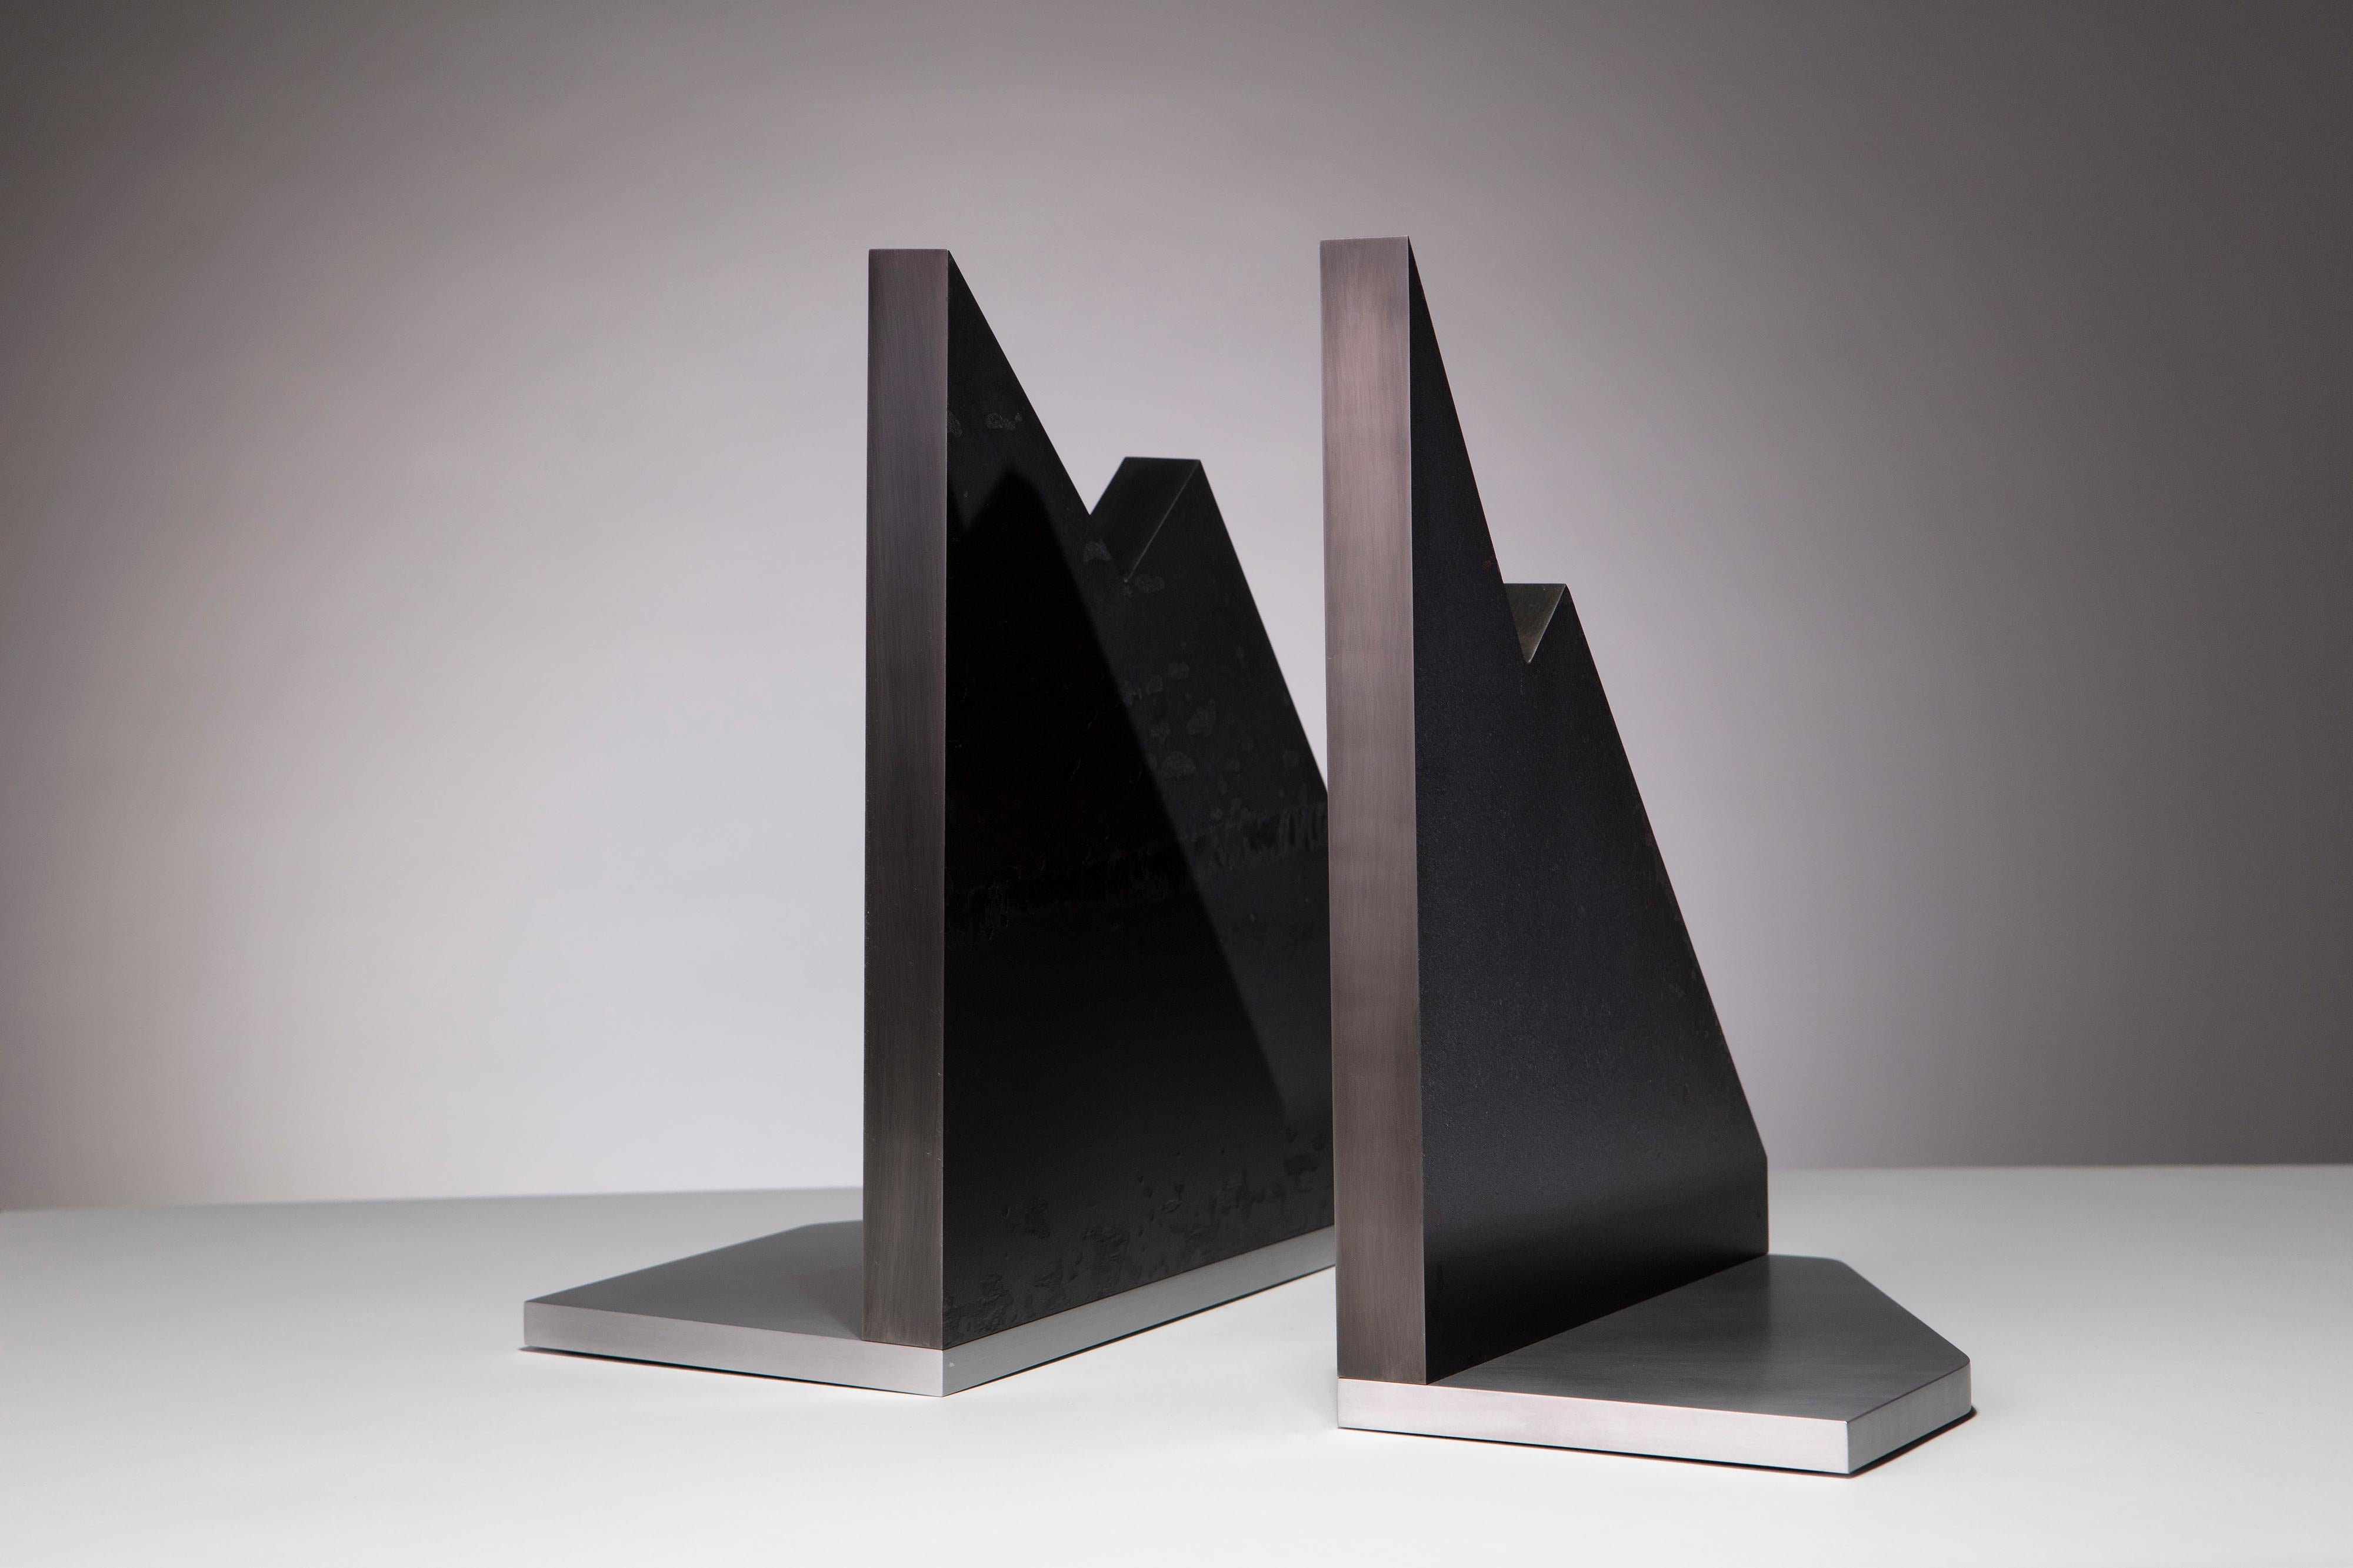 Die Berge: moderne skulpturale Buchstützen aus Stahl und Aluminium von Erik Johnson von APD. Massive Stahlplatten und brüniertes Aluminium werden zu diesen kühnen Statement-Stücken kombiniert.

1 von 1
Gestempelt APD 00040

Ein